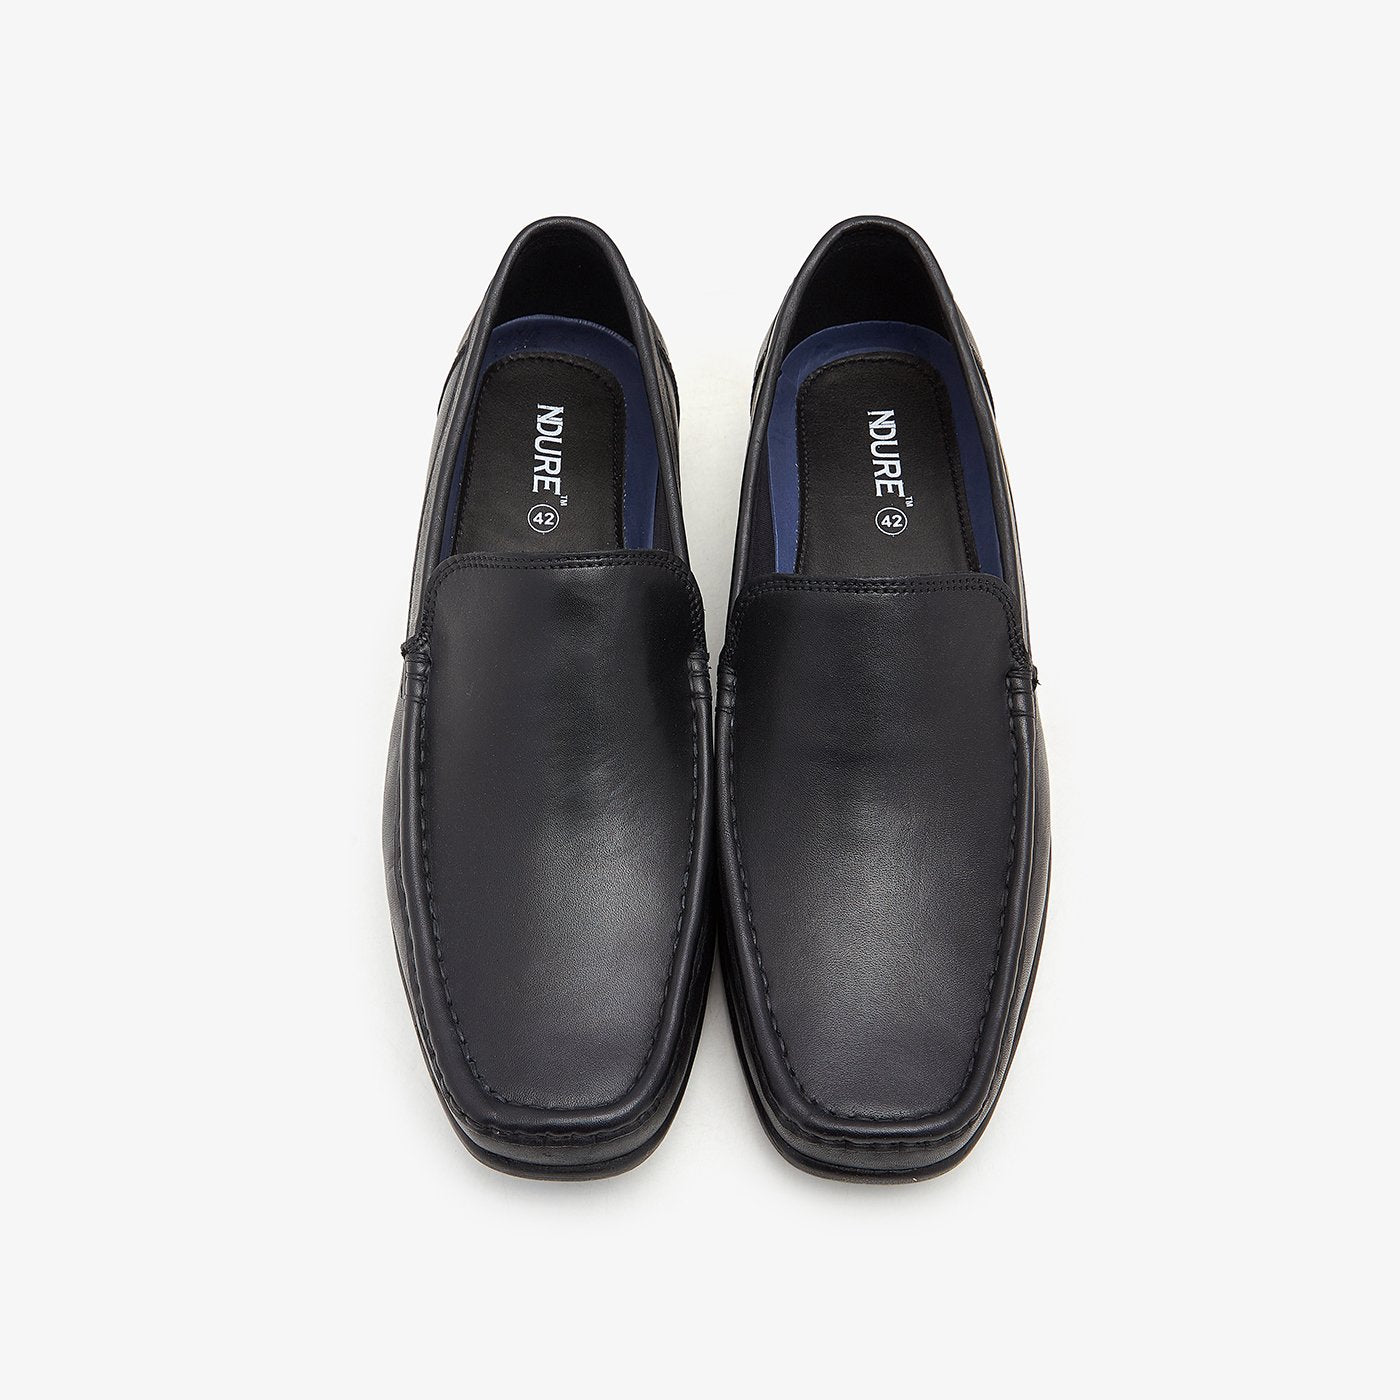 Men's Slip-on Shoes